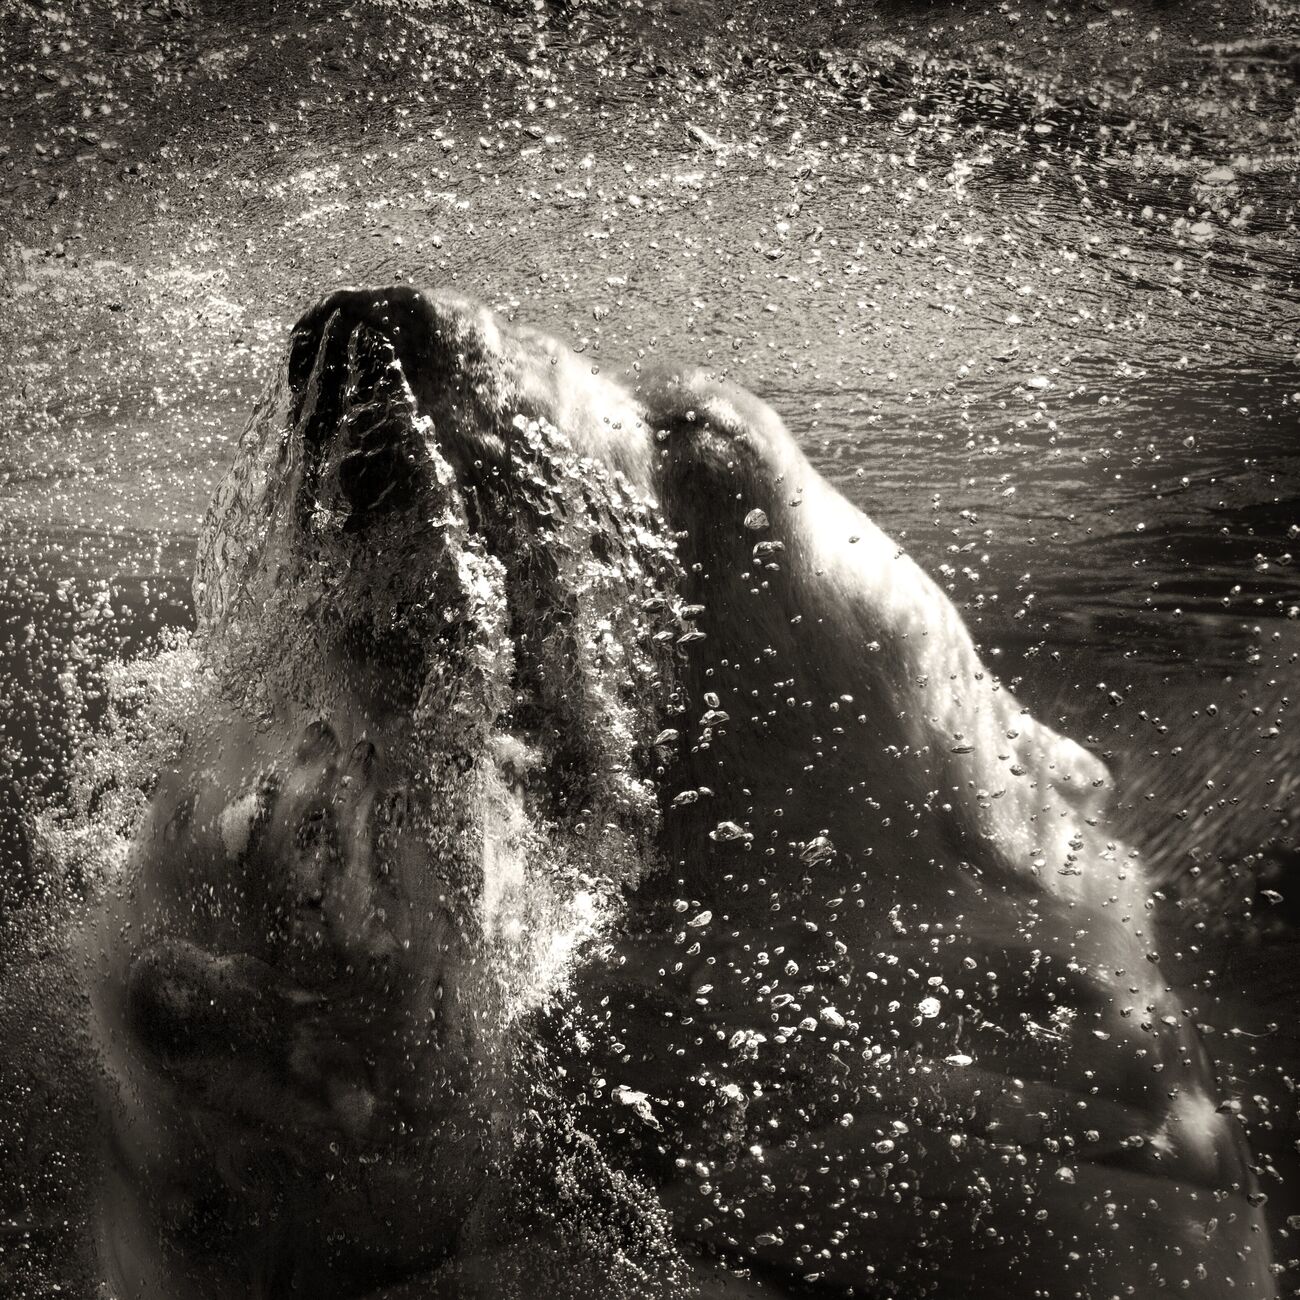 Underwater Polar Bear, Palmyre Zoo, France. September 2009. Ref-1226 - Denis Olivier Art Photography